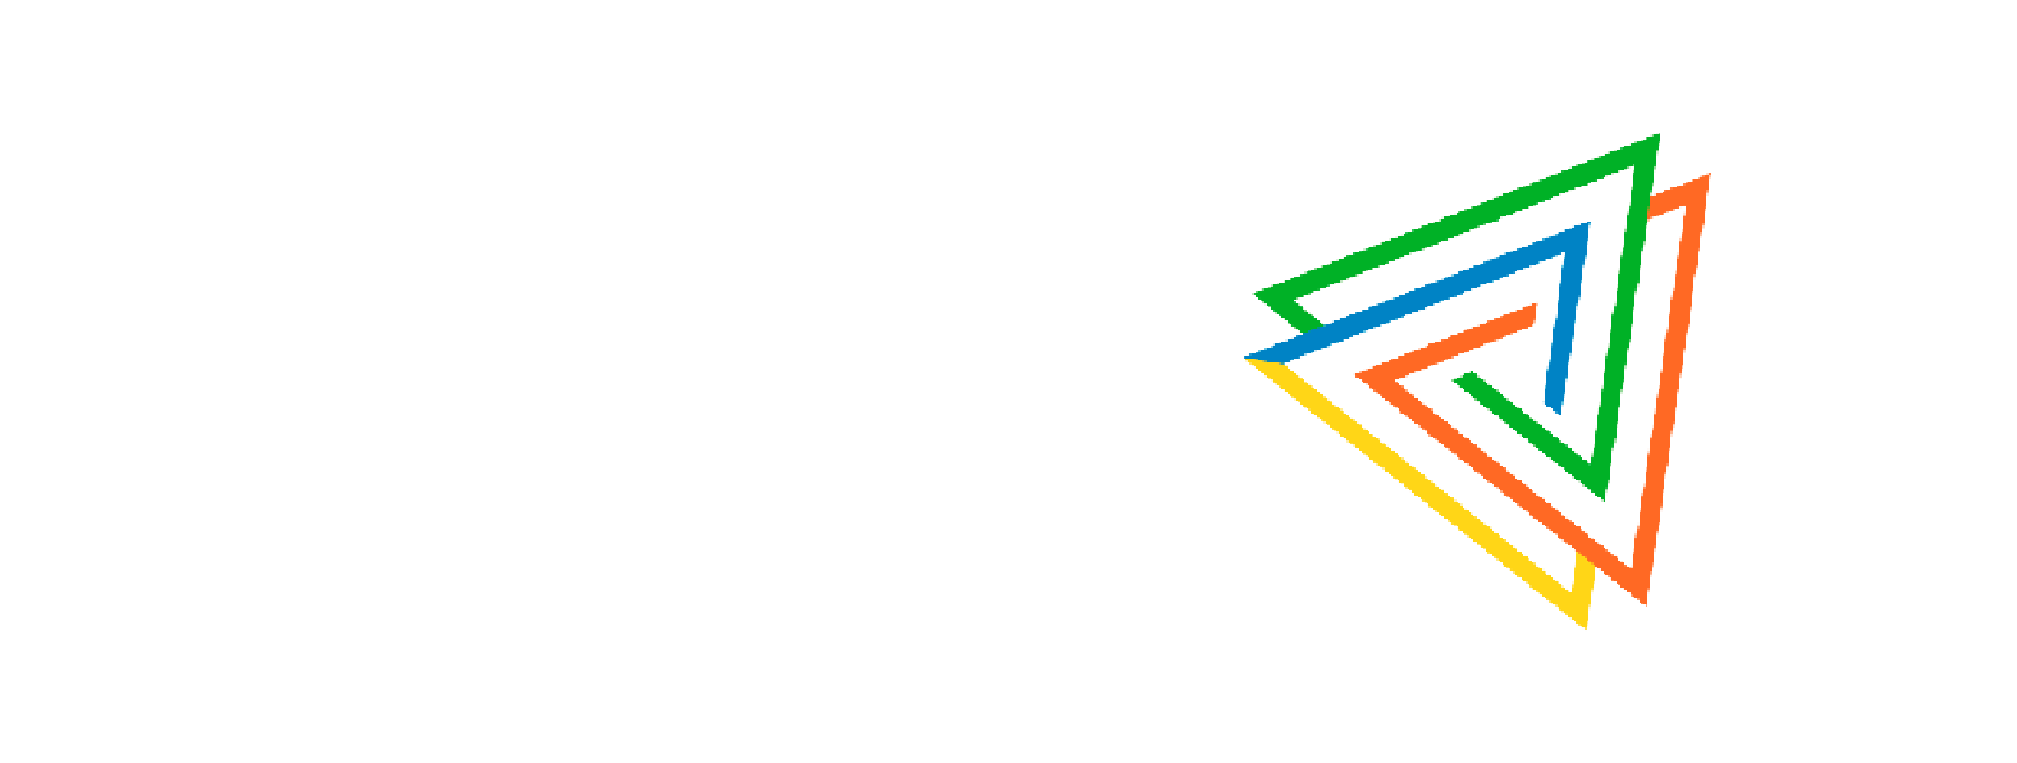 Joberma | Electricidad | tu solución eléctrica